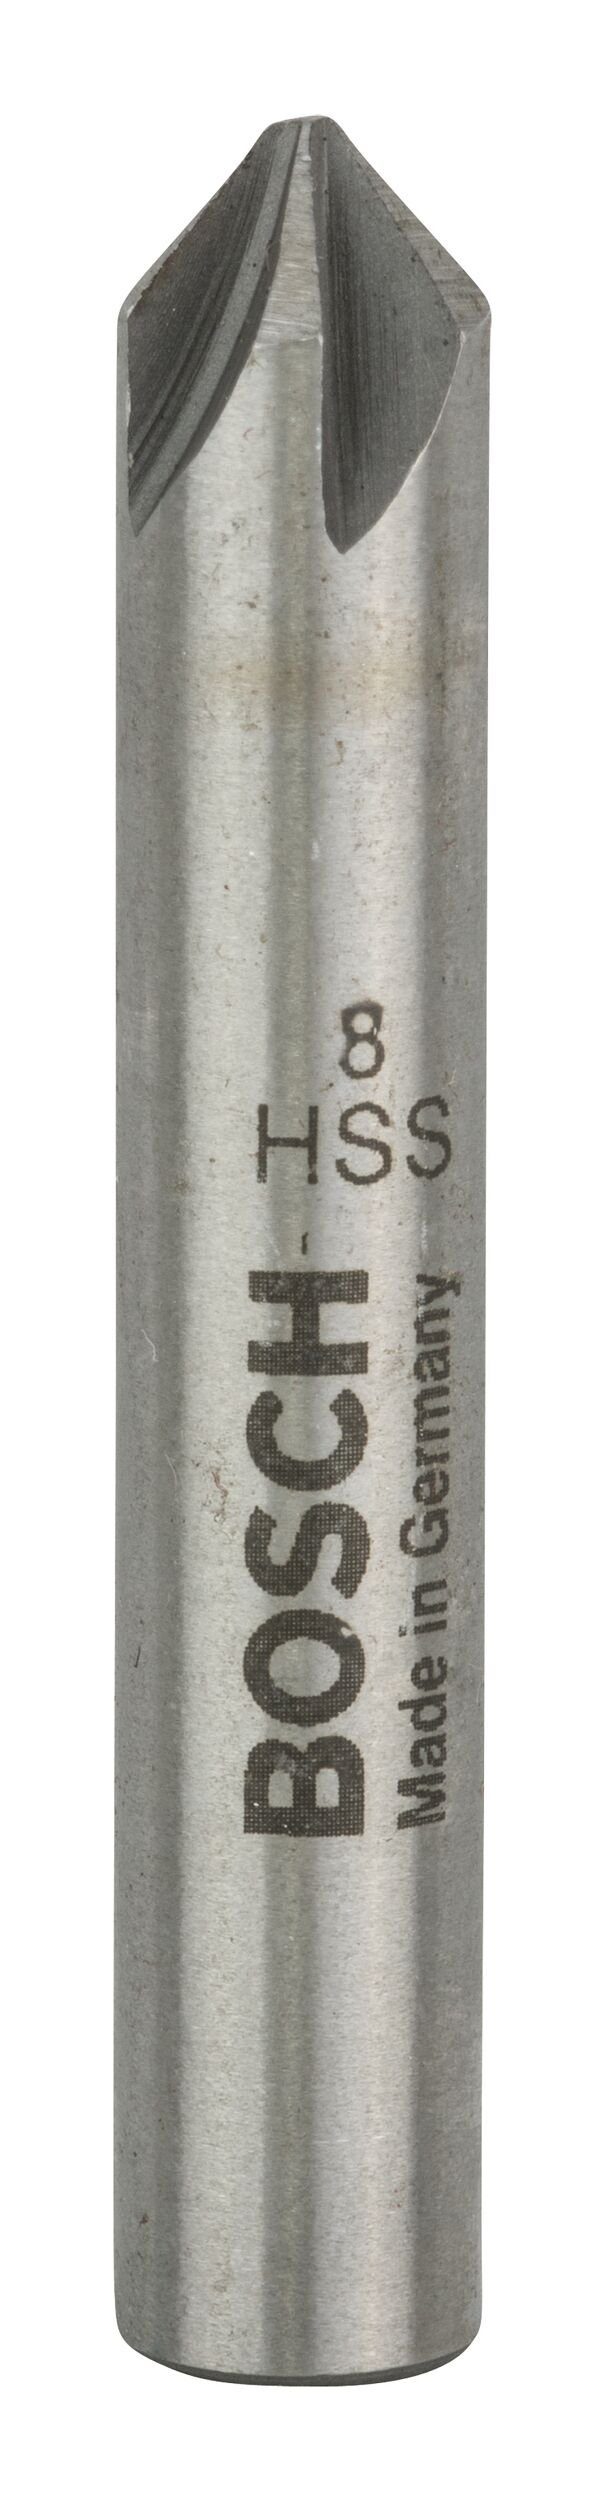 BOSCH Metallbohrer, Kegelsenker M4 - 8 x 48 x 8 mm